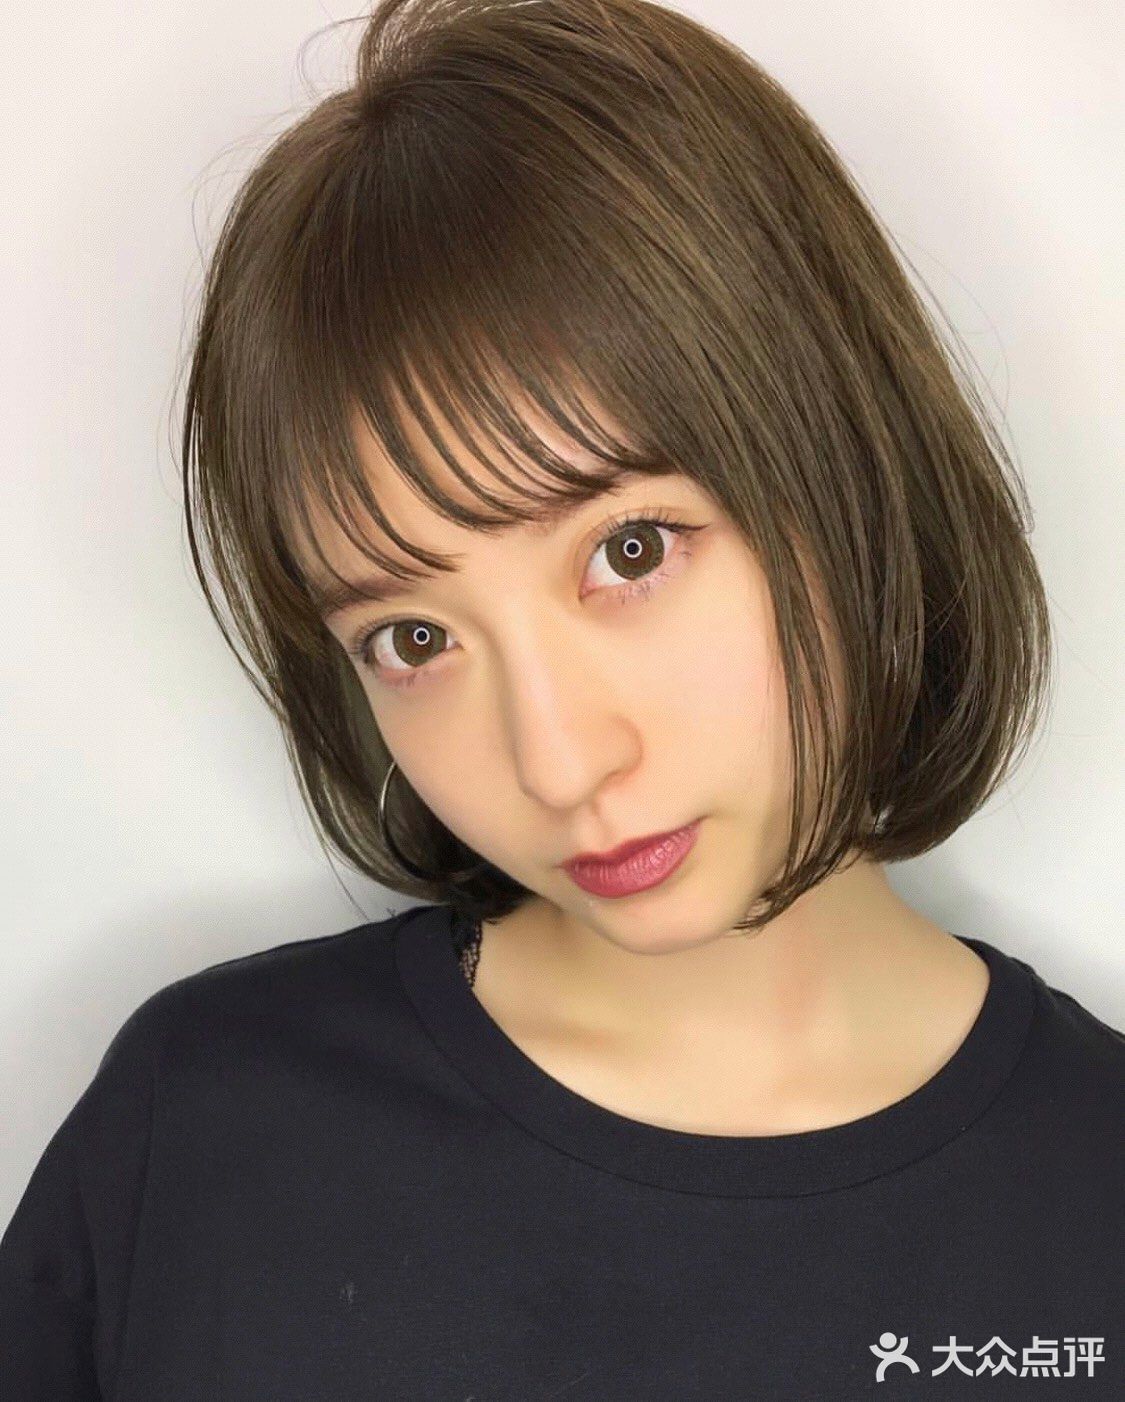 日本交友网站评选男生最没抵抗力的女生发型第一名